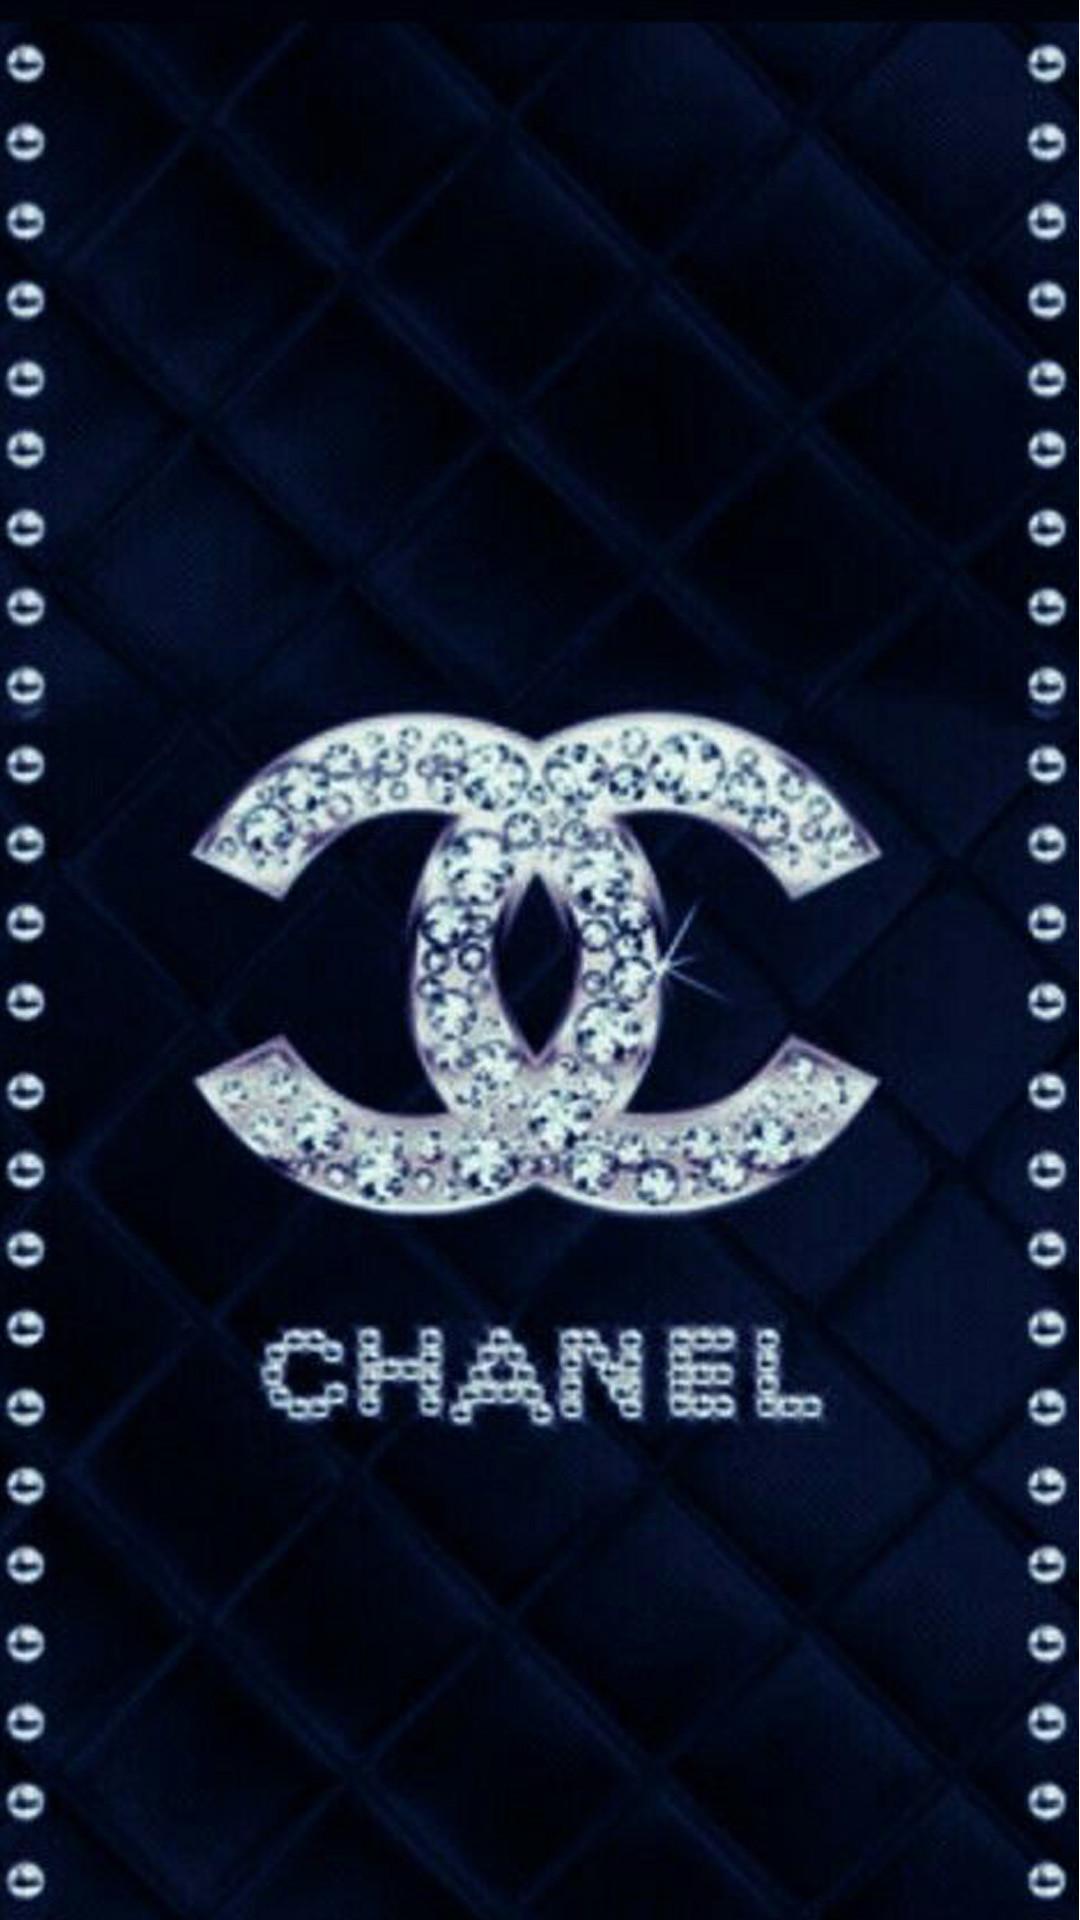 100以上 Chanel 画像 待ち受け Hd壁紙画像を検索するための最大のサイト